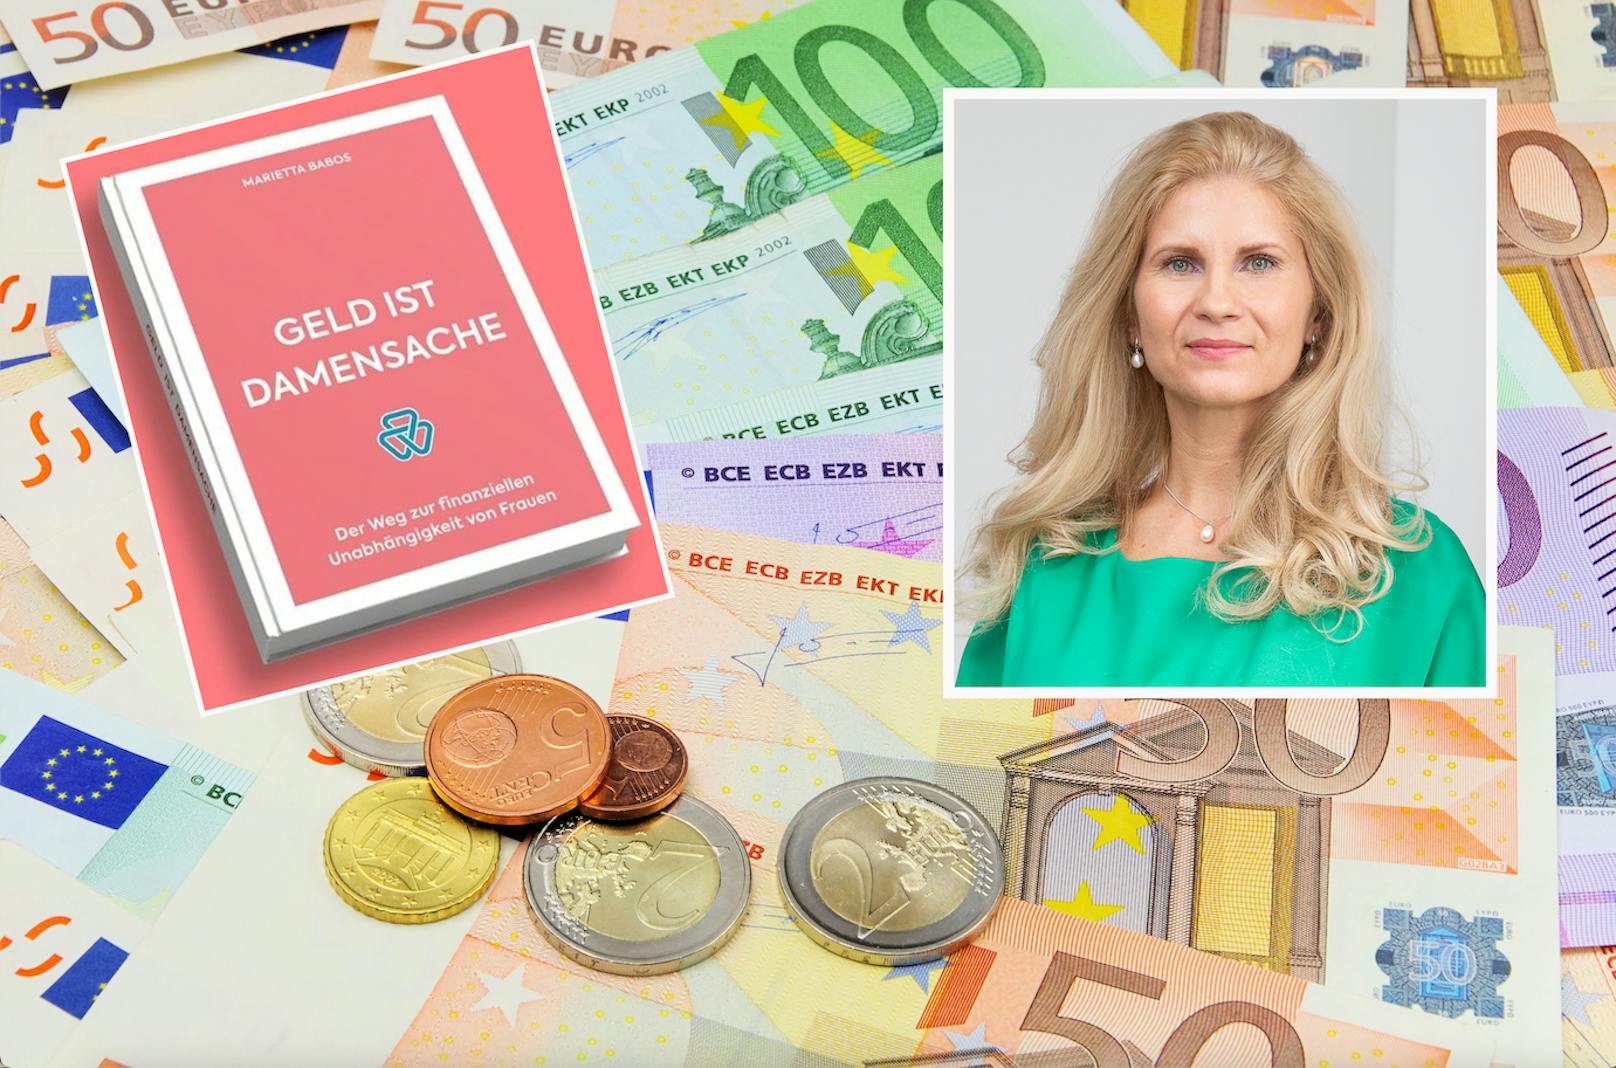 Marietta Babos gibt in ihrem Buch "Geld ist Damensache" Finanz-Tipps für Frauen.